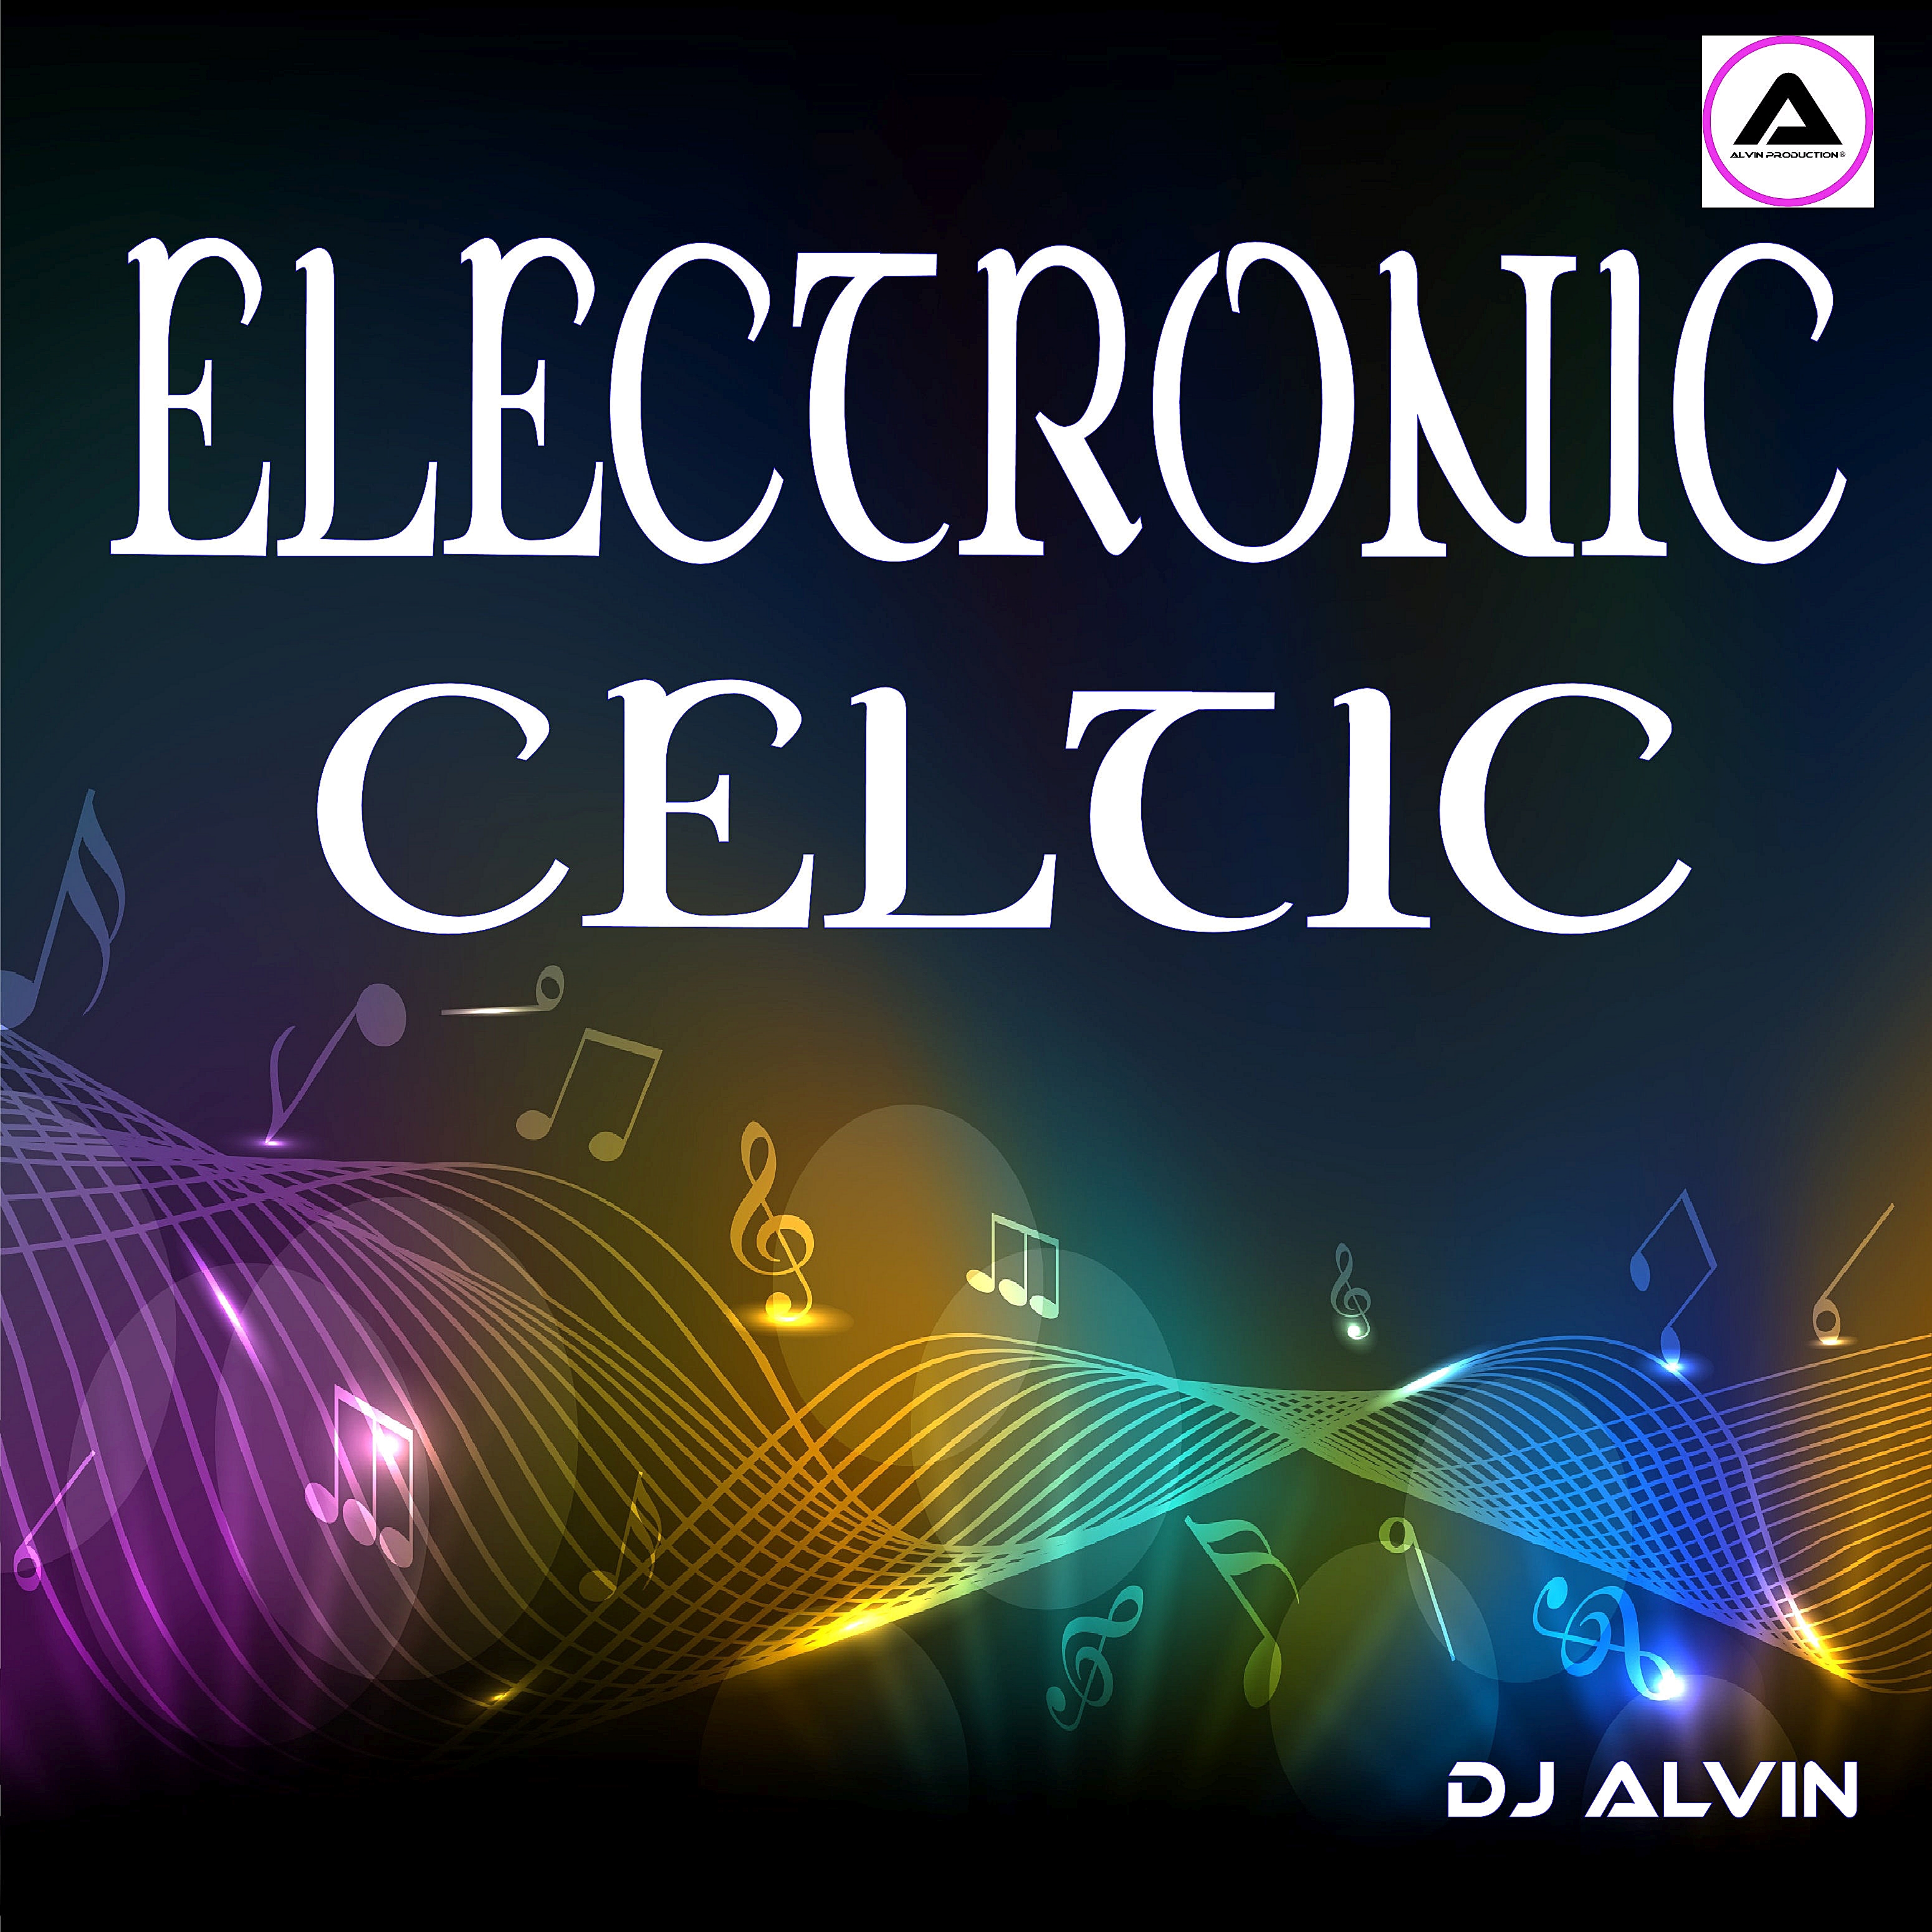 Electronic Celtic